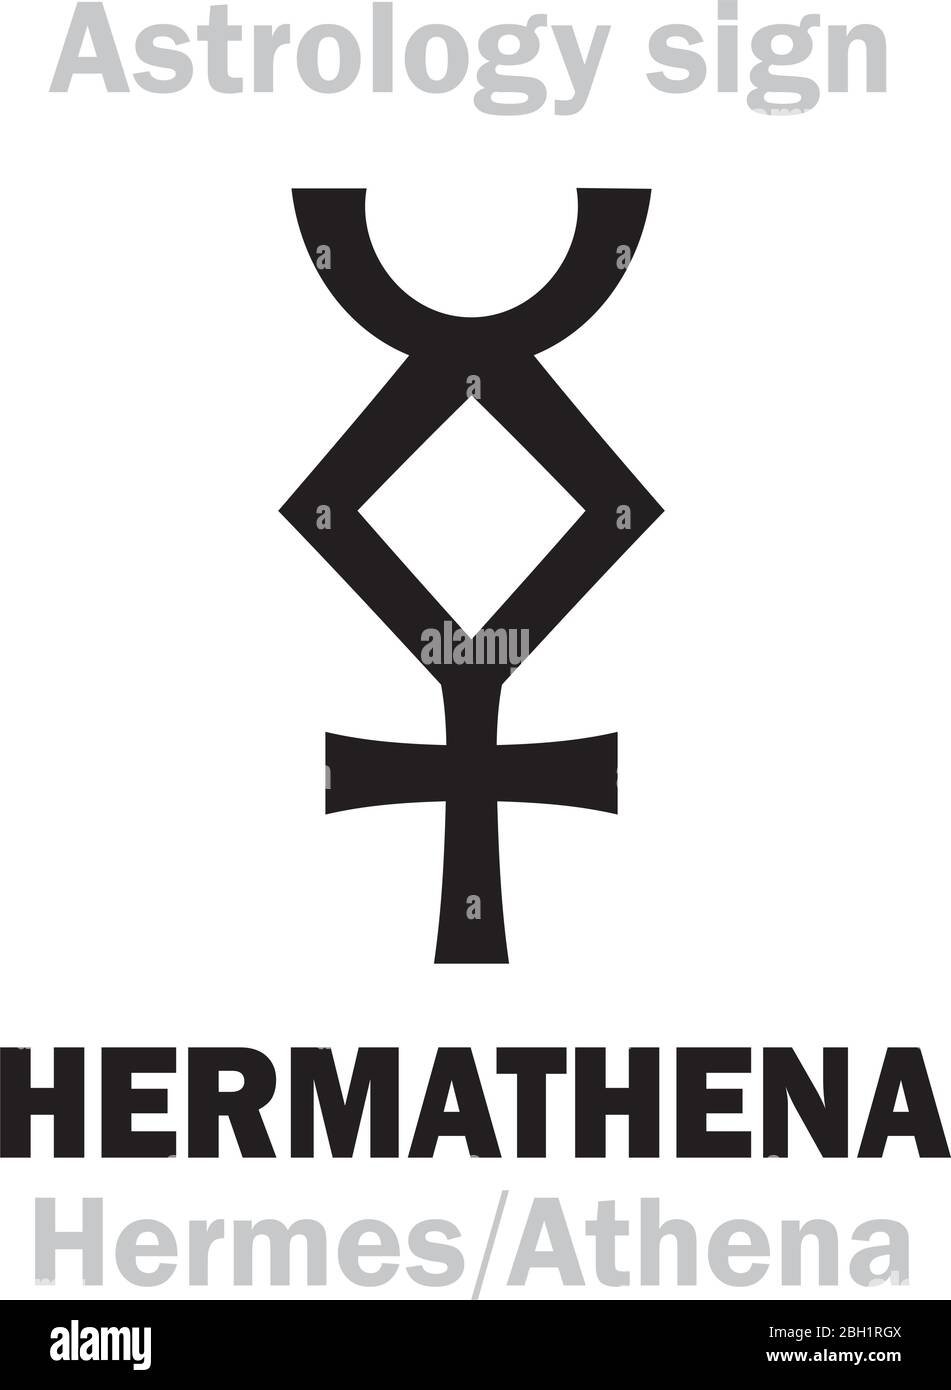 Astrologie Alphabet: HERMATHENA (Hermes+Athena), lokal Altgriechisch sakrale Doppelgottheit der Beredsamkeit, Handwerk, Wissenschaften. Symbol der Verdoppelung der Weisheit. Stock Vektor